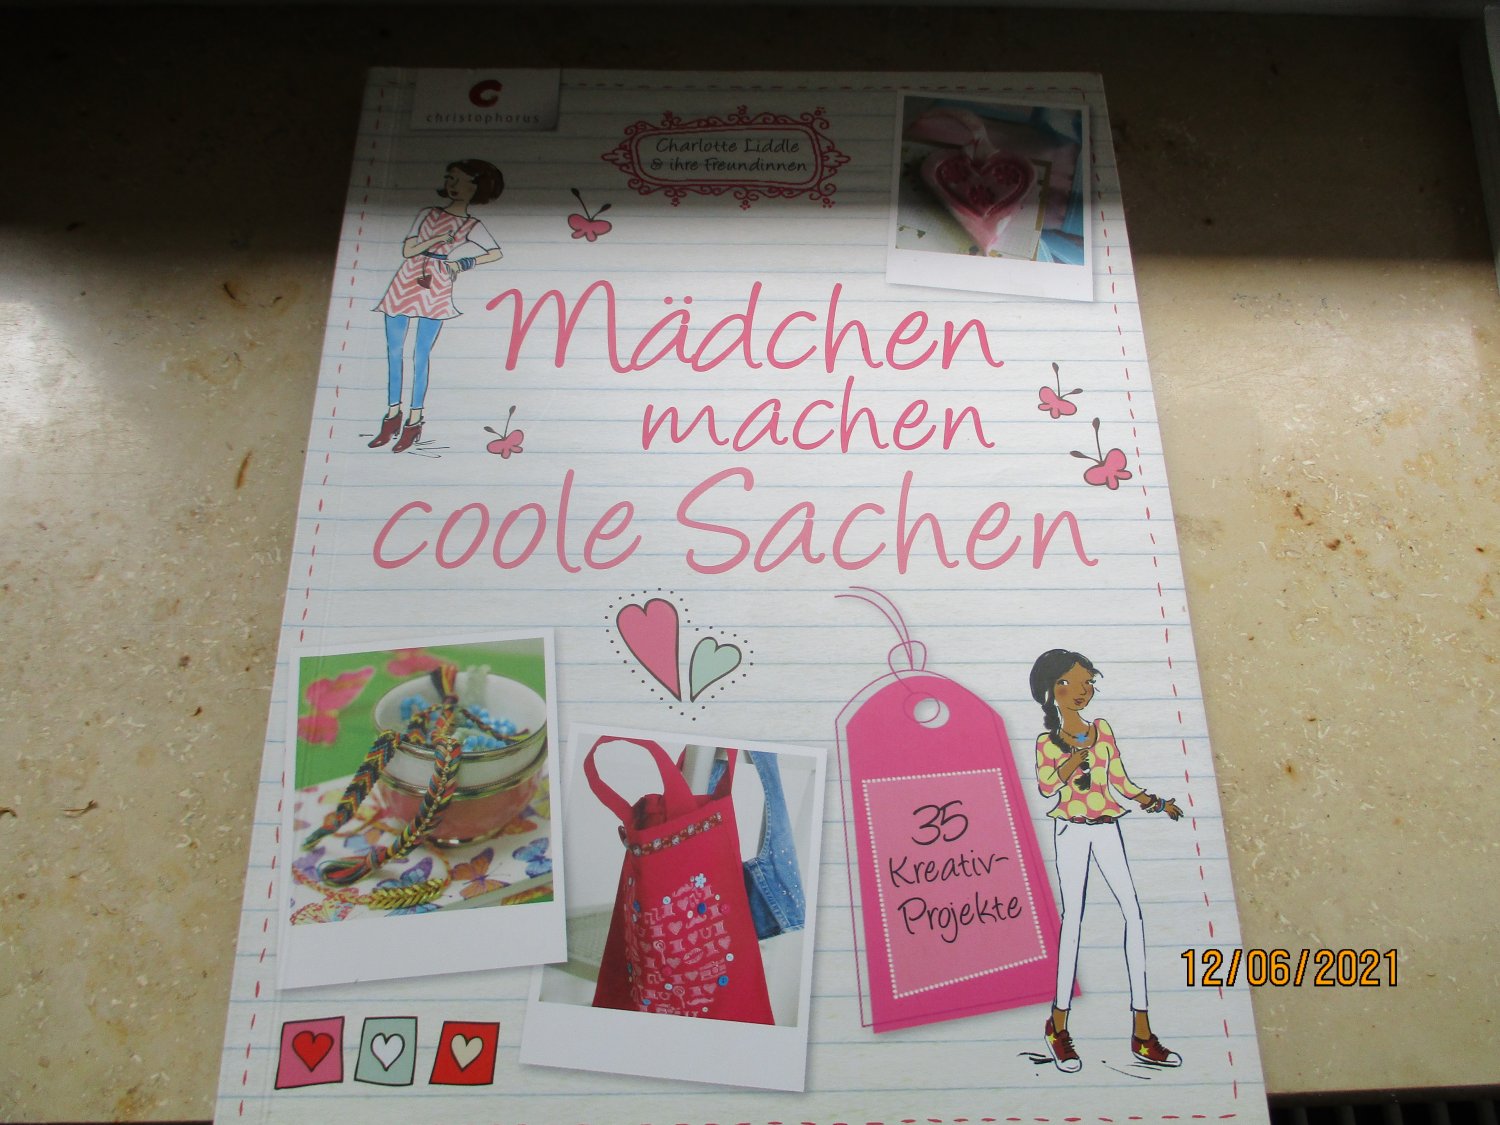 https://images.booklooker.de/x/022nCk/Charlotte-Liddle+M%C3%A4dchen-machen-coole-Sachen-35-Kreativ-Projekte.jpg